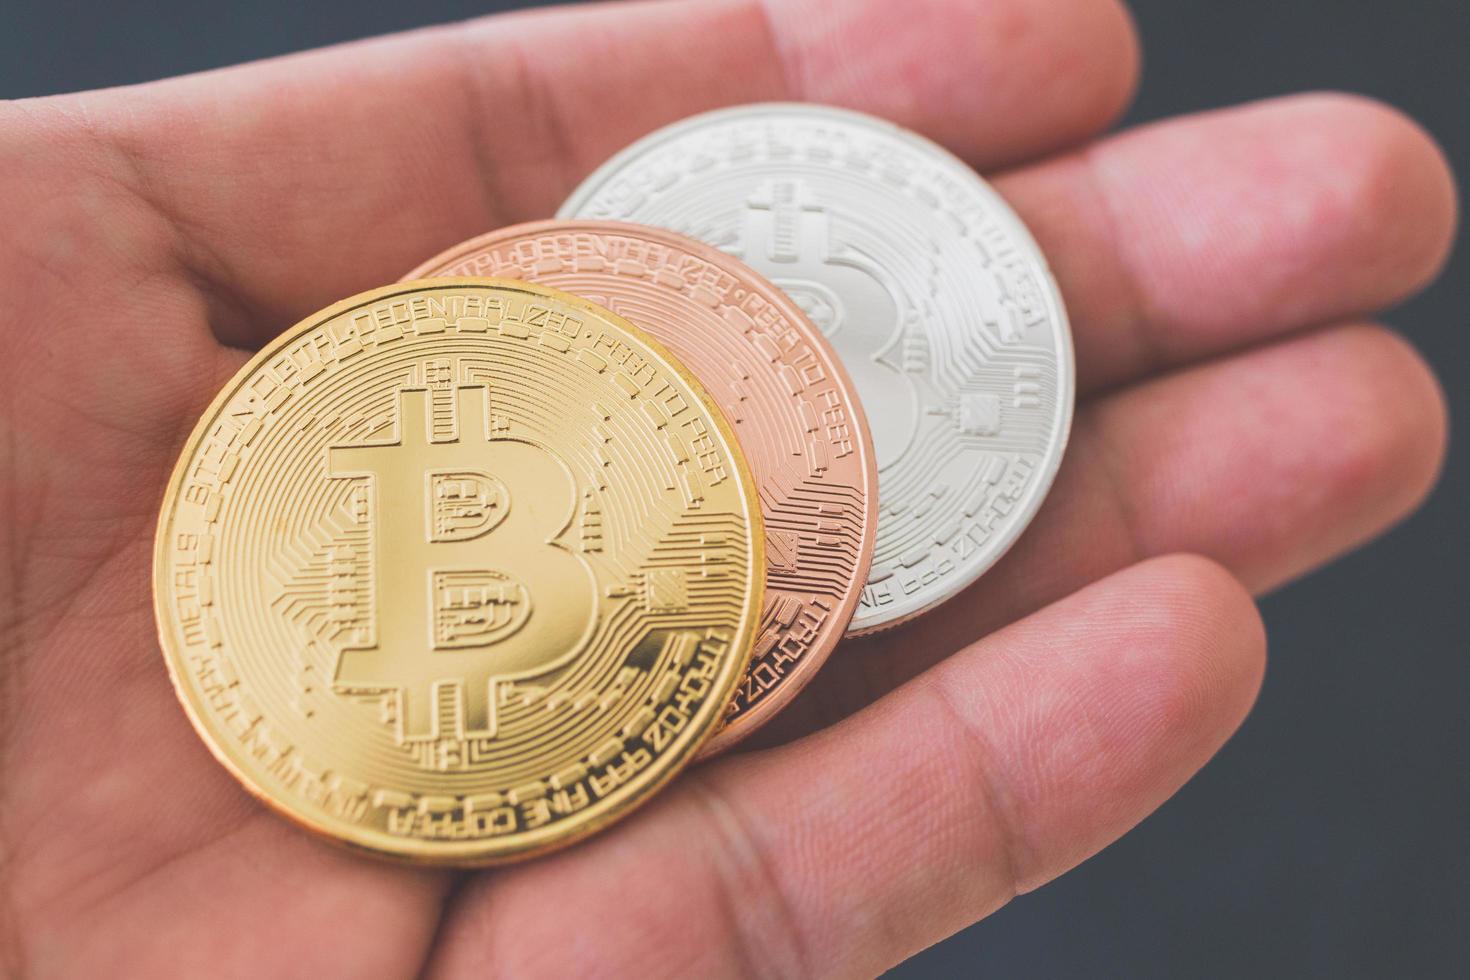 pièces de monnaie bitcoin, concept de monnaie numérique photo